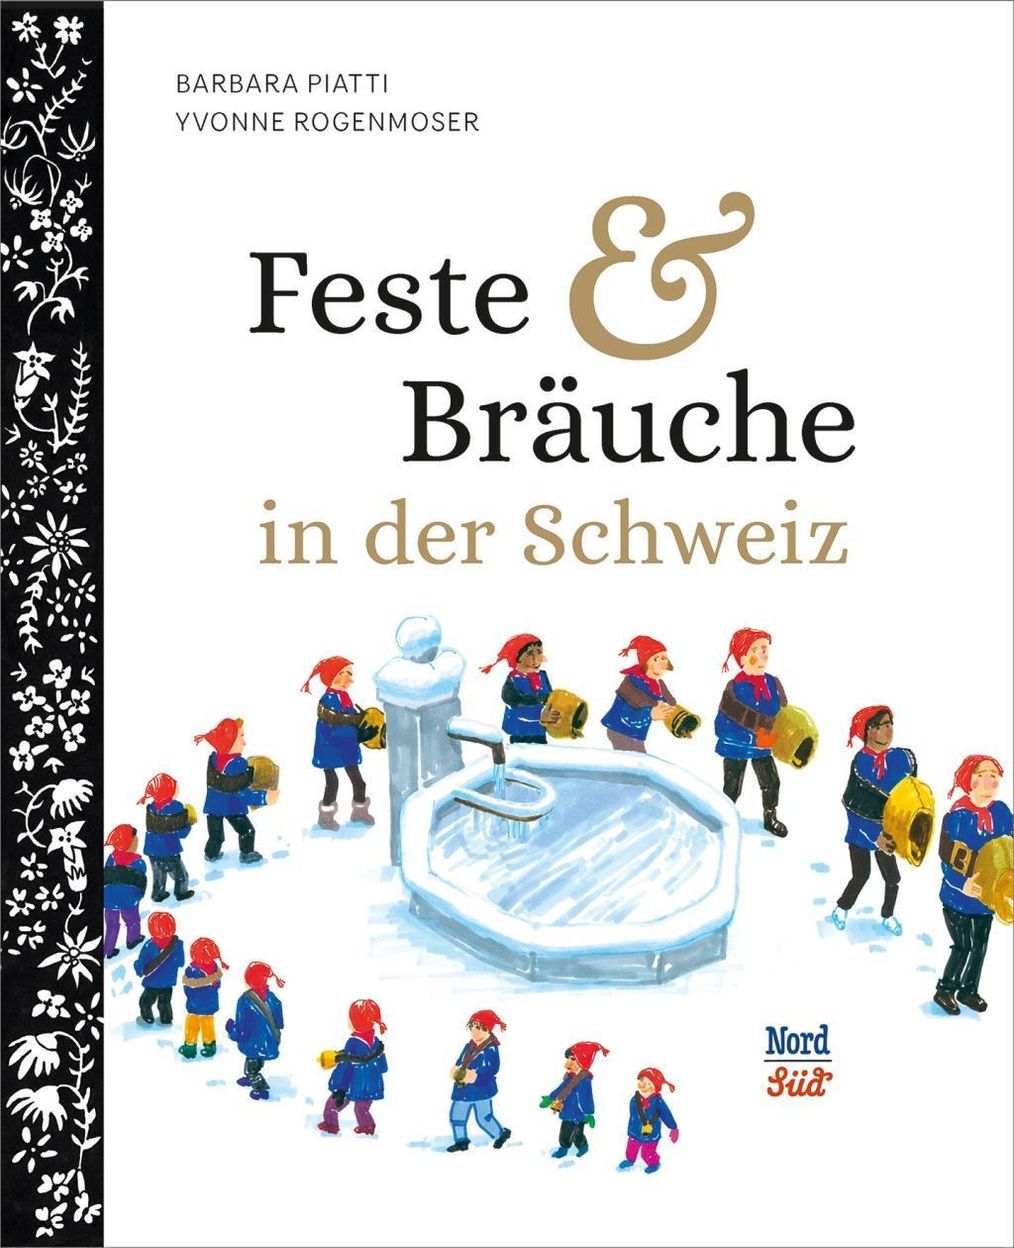 Feste und Bräuche in der Schweiz Buch versandkostenfrei bei Weltbild.ch